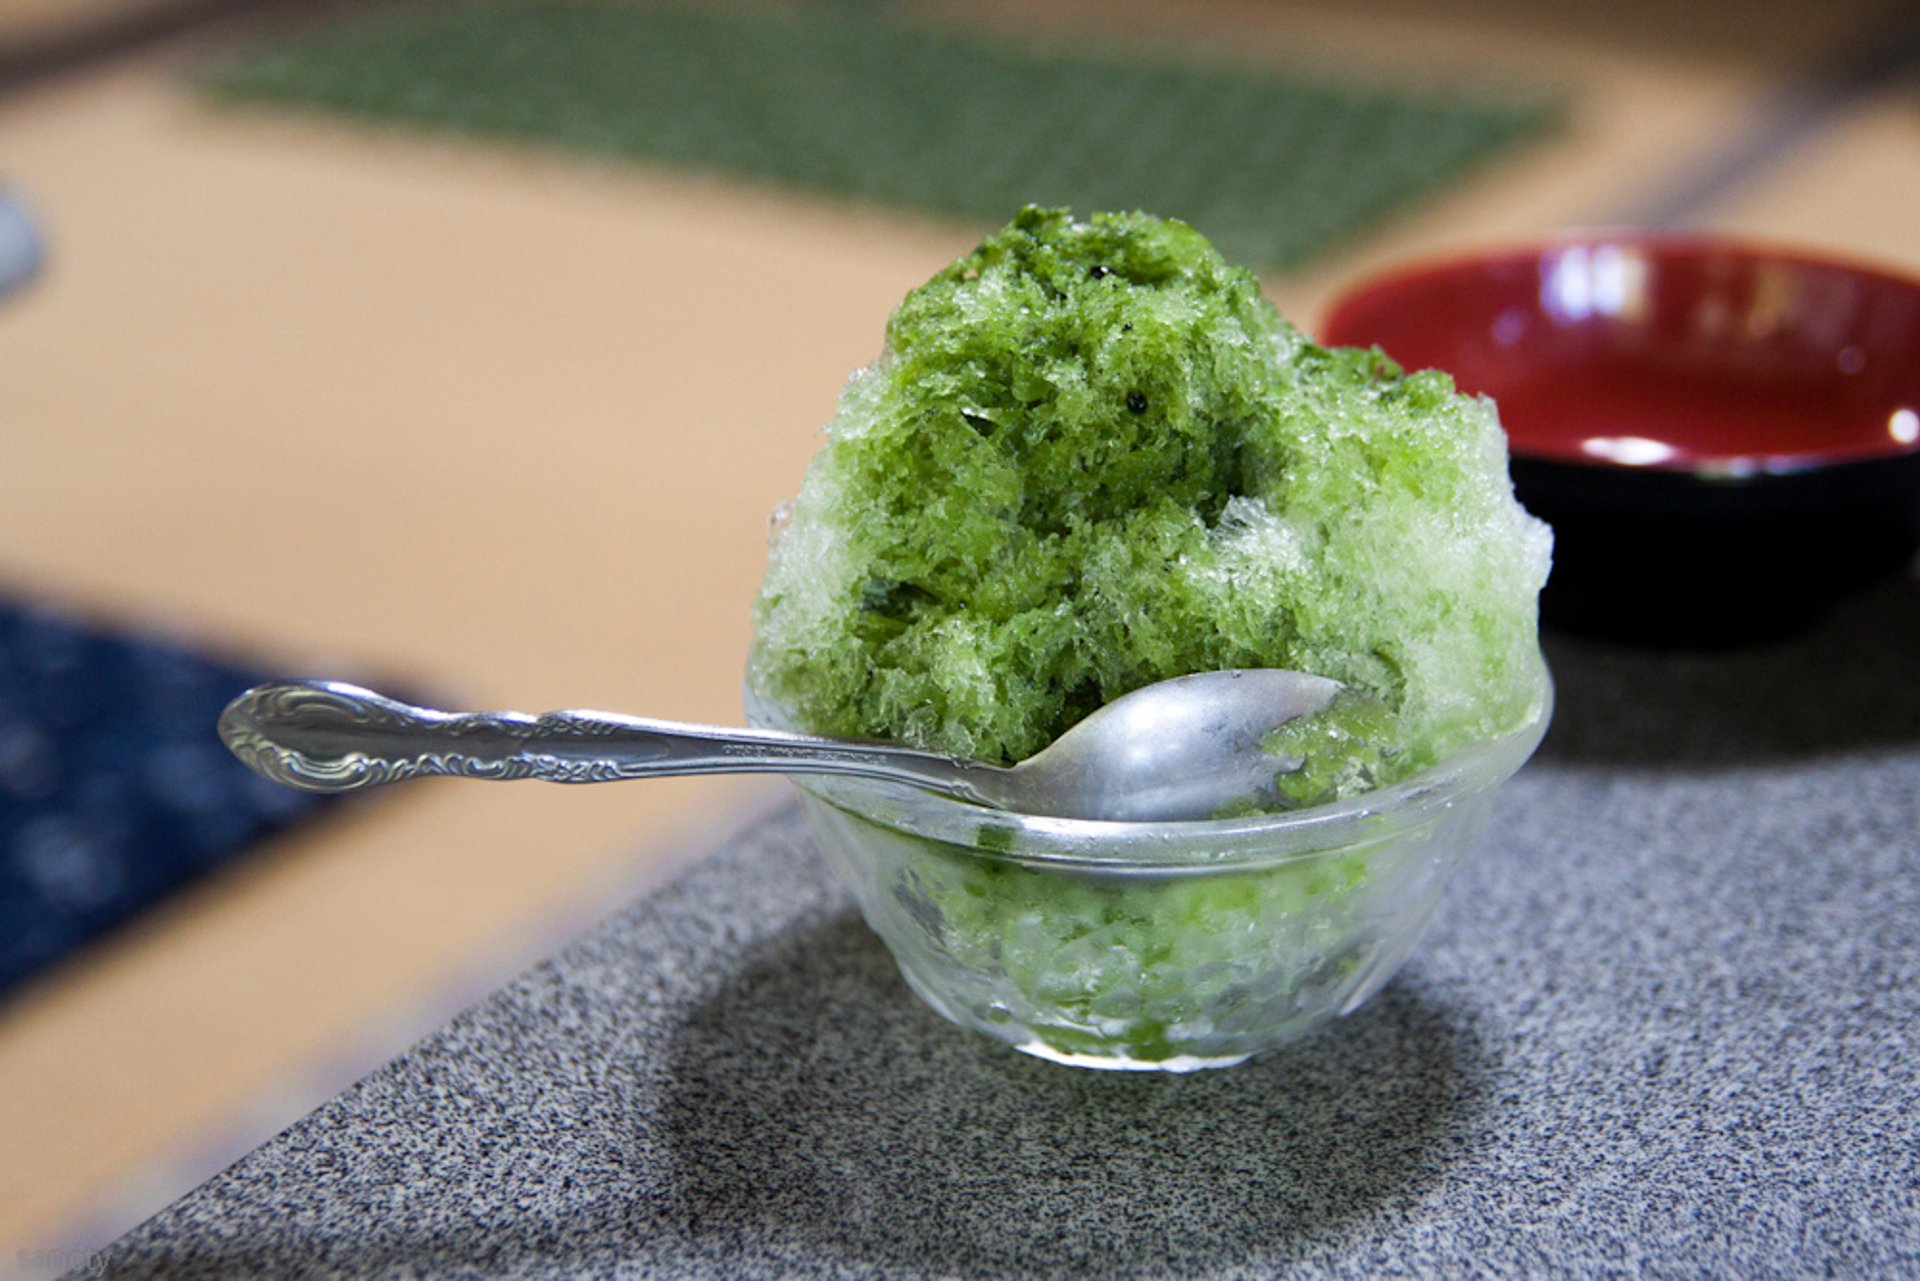 Kakigori o hielo afeitado